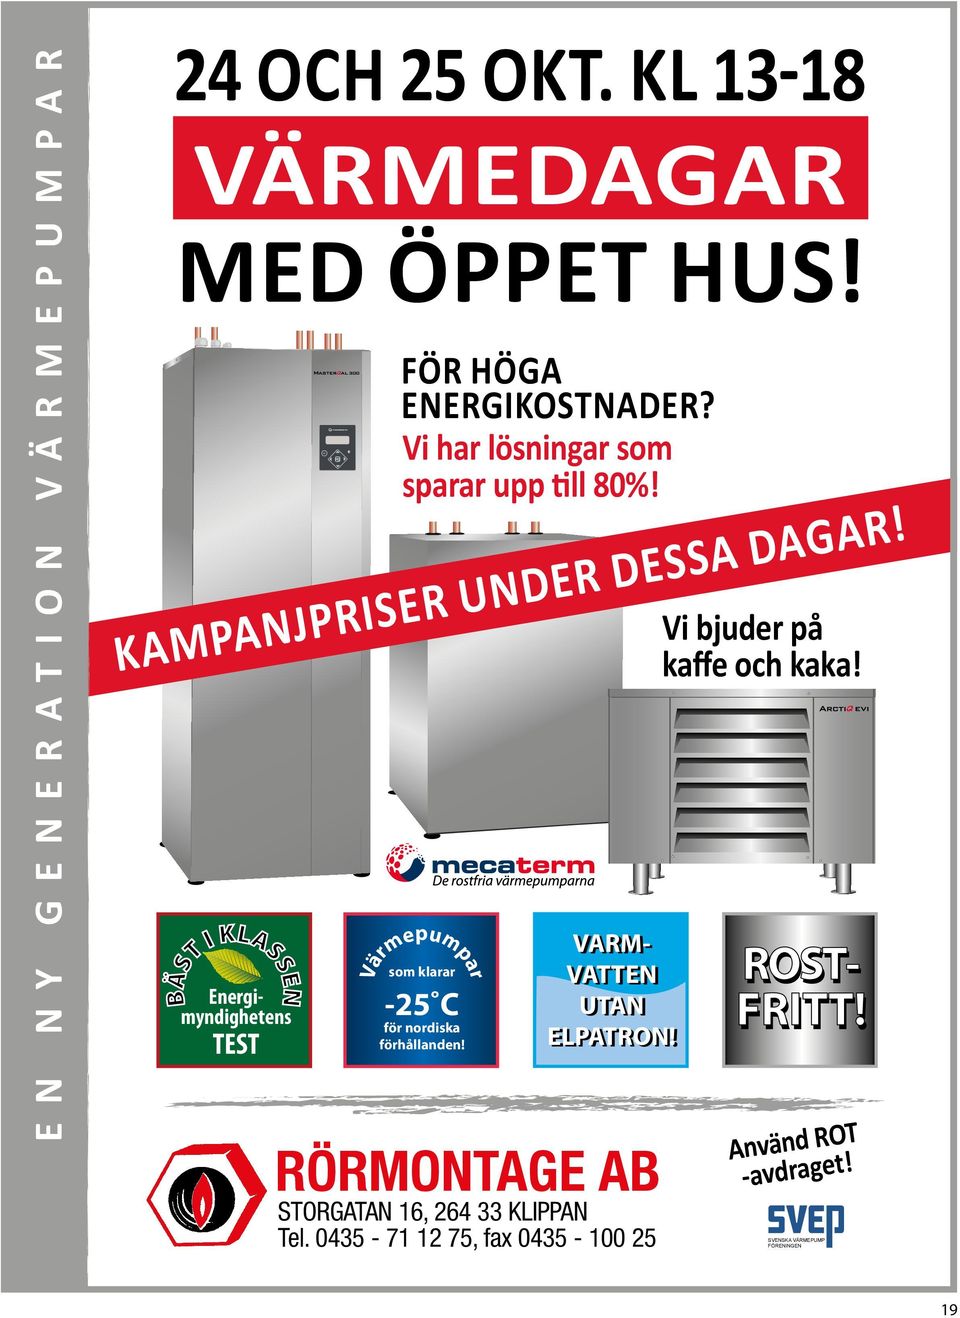 kampanjpriser under dessa dagar! som klarar Värmepumpar -25 C för nordiska förhållanden!